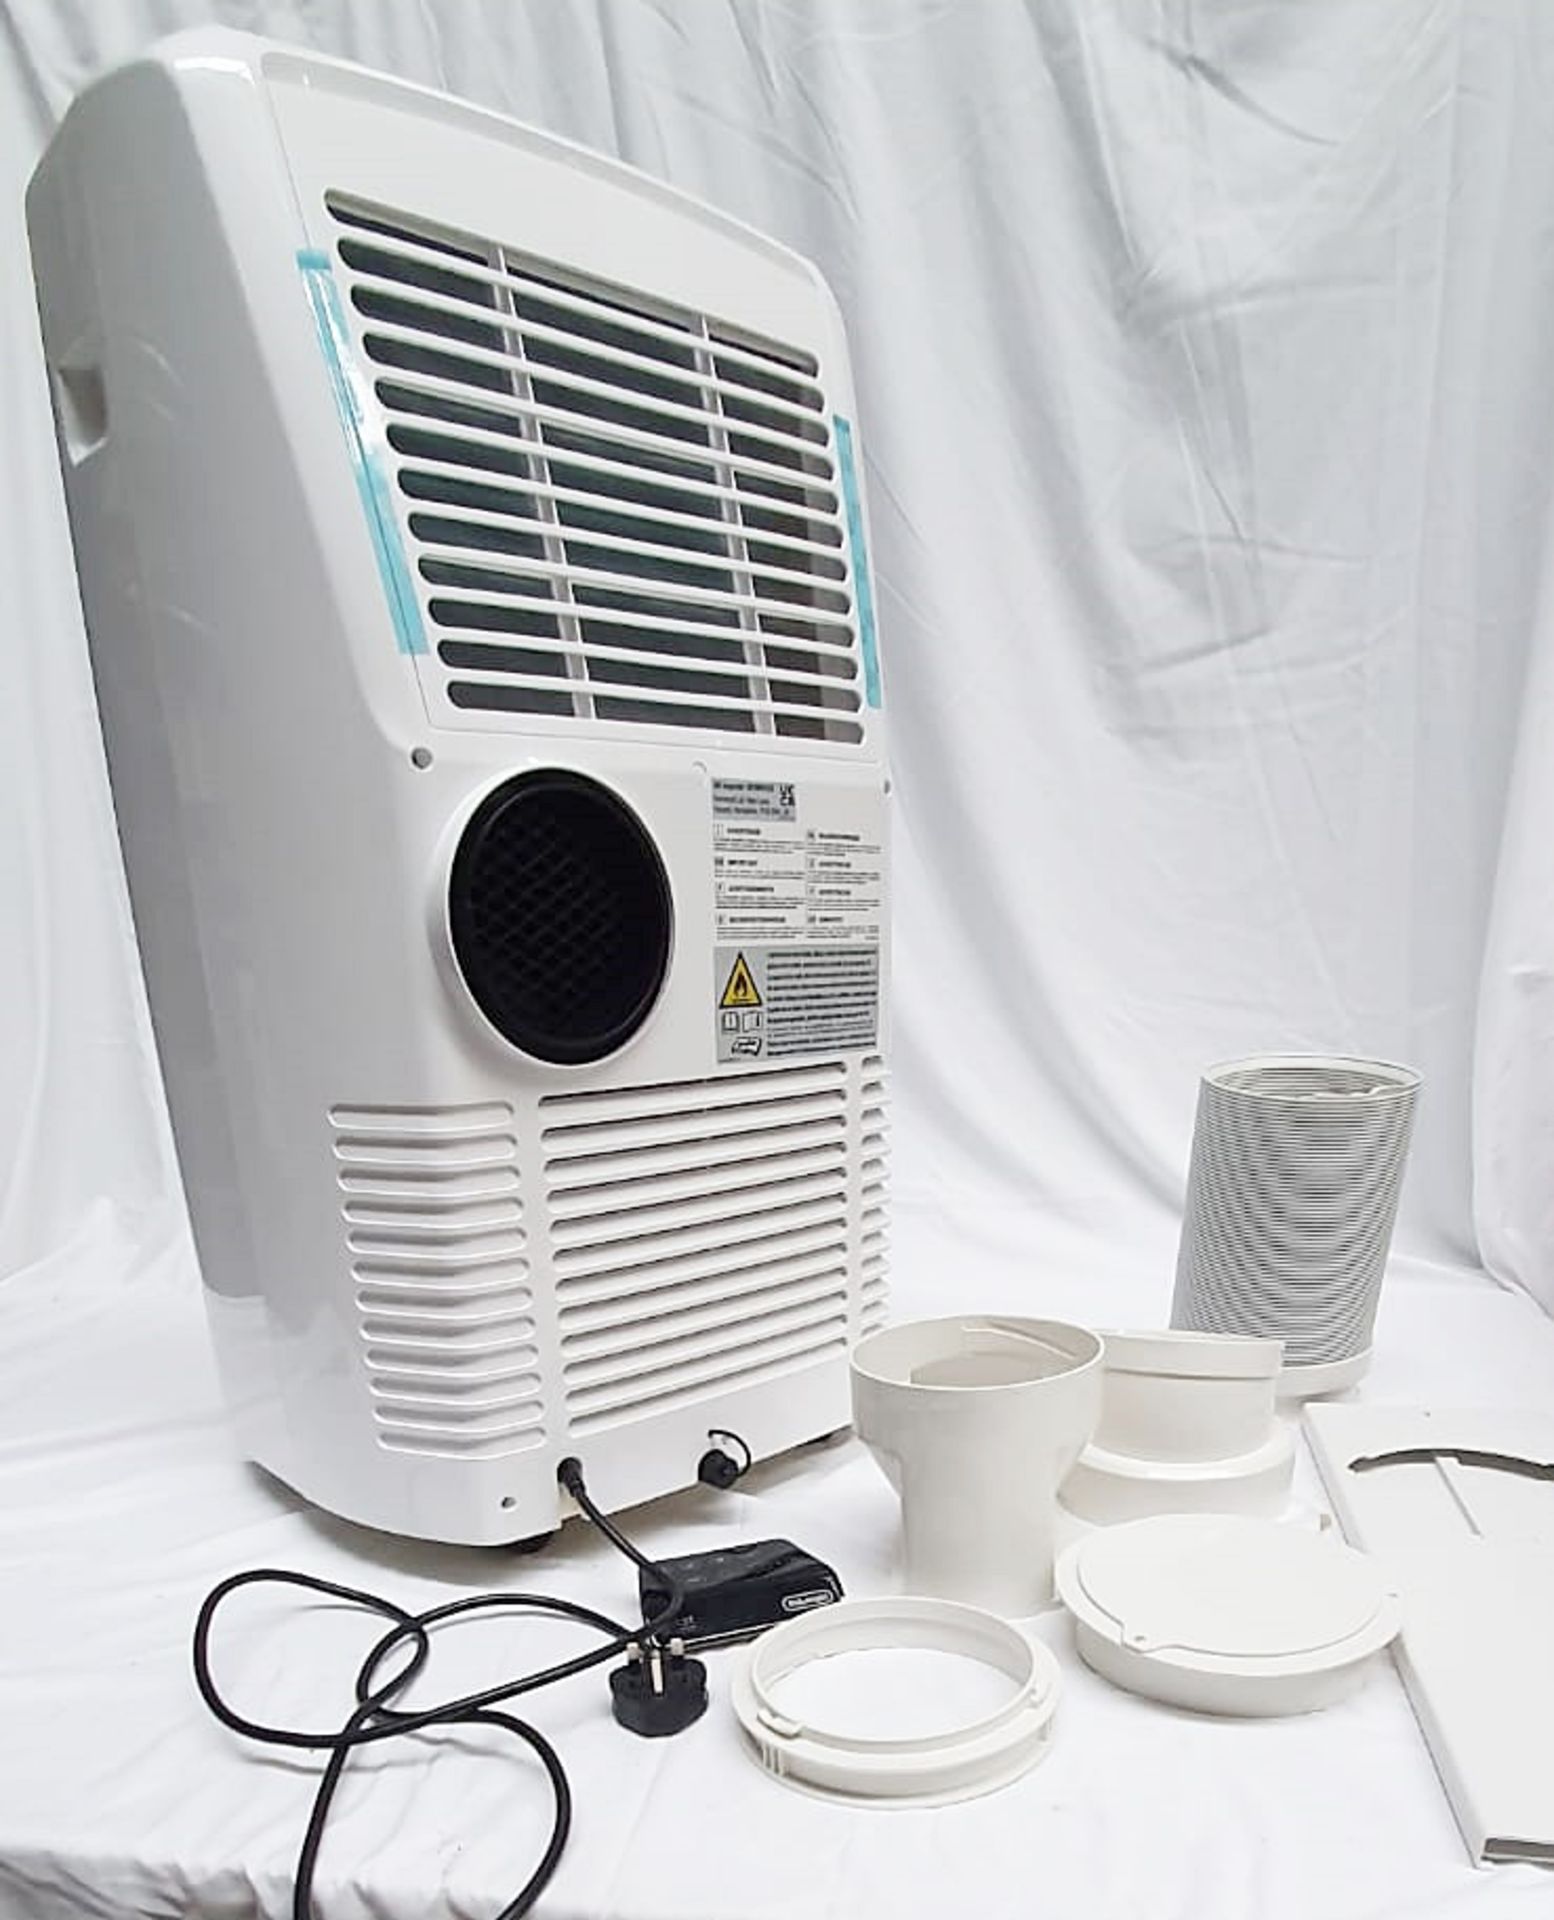 1 x DELONGHI 'Pinguino' PAC EX130 CST Smart Air Conditioner 13000 Btu - Boxed - Original RRP £999.00 - Image 3 of 12